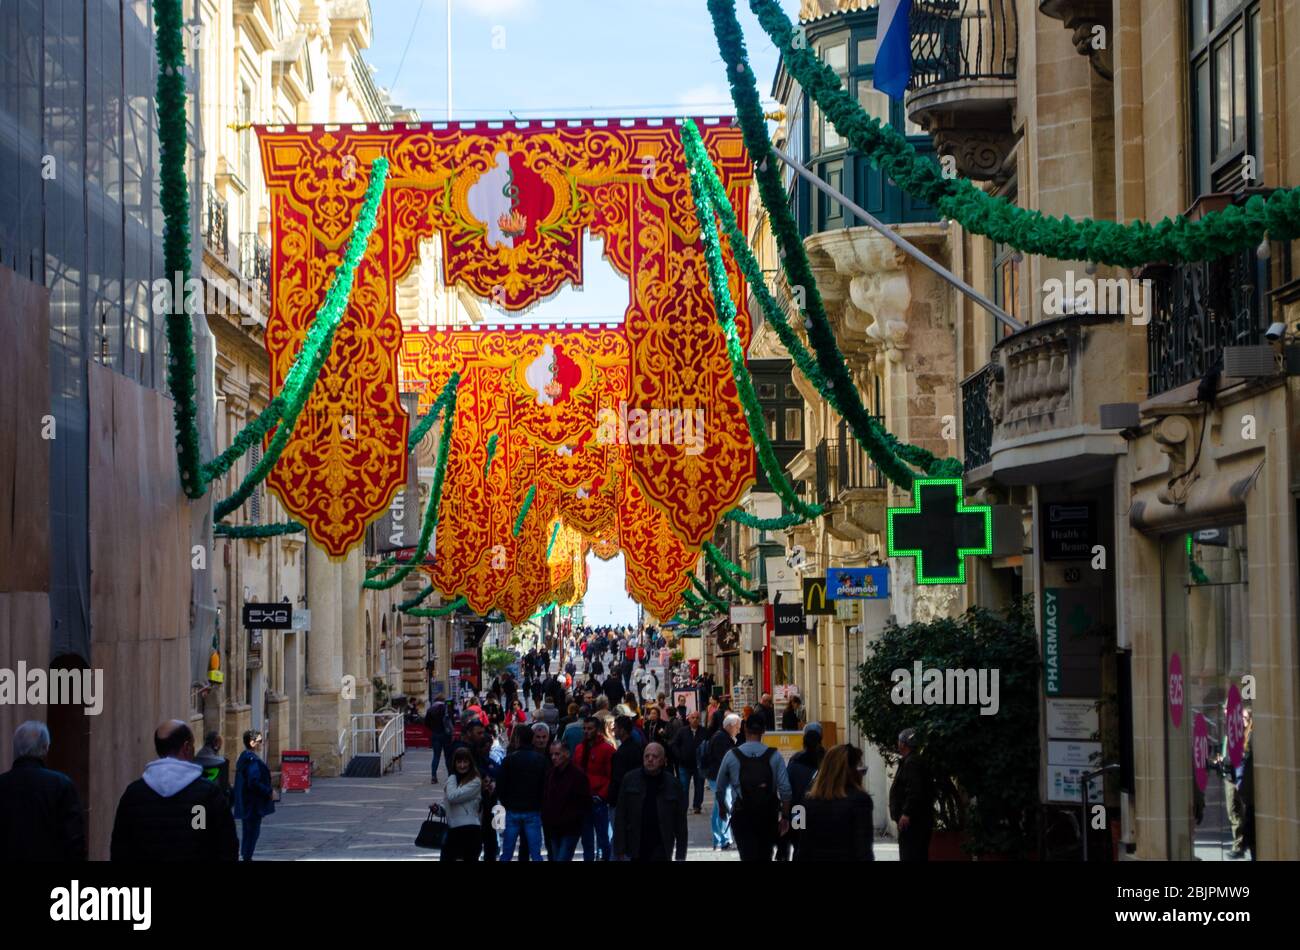 Valleta Malta 9. Februar 2020: Menschenmenge auf der Straße zum religiösen Fest des St. Paul's Shipwreck mit großen Bannern Stockfoto